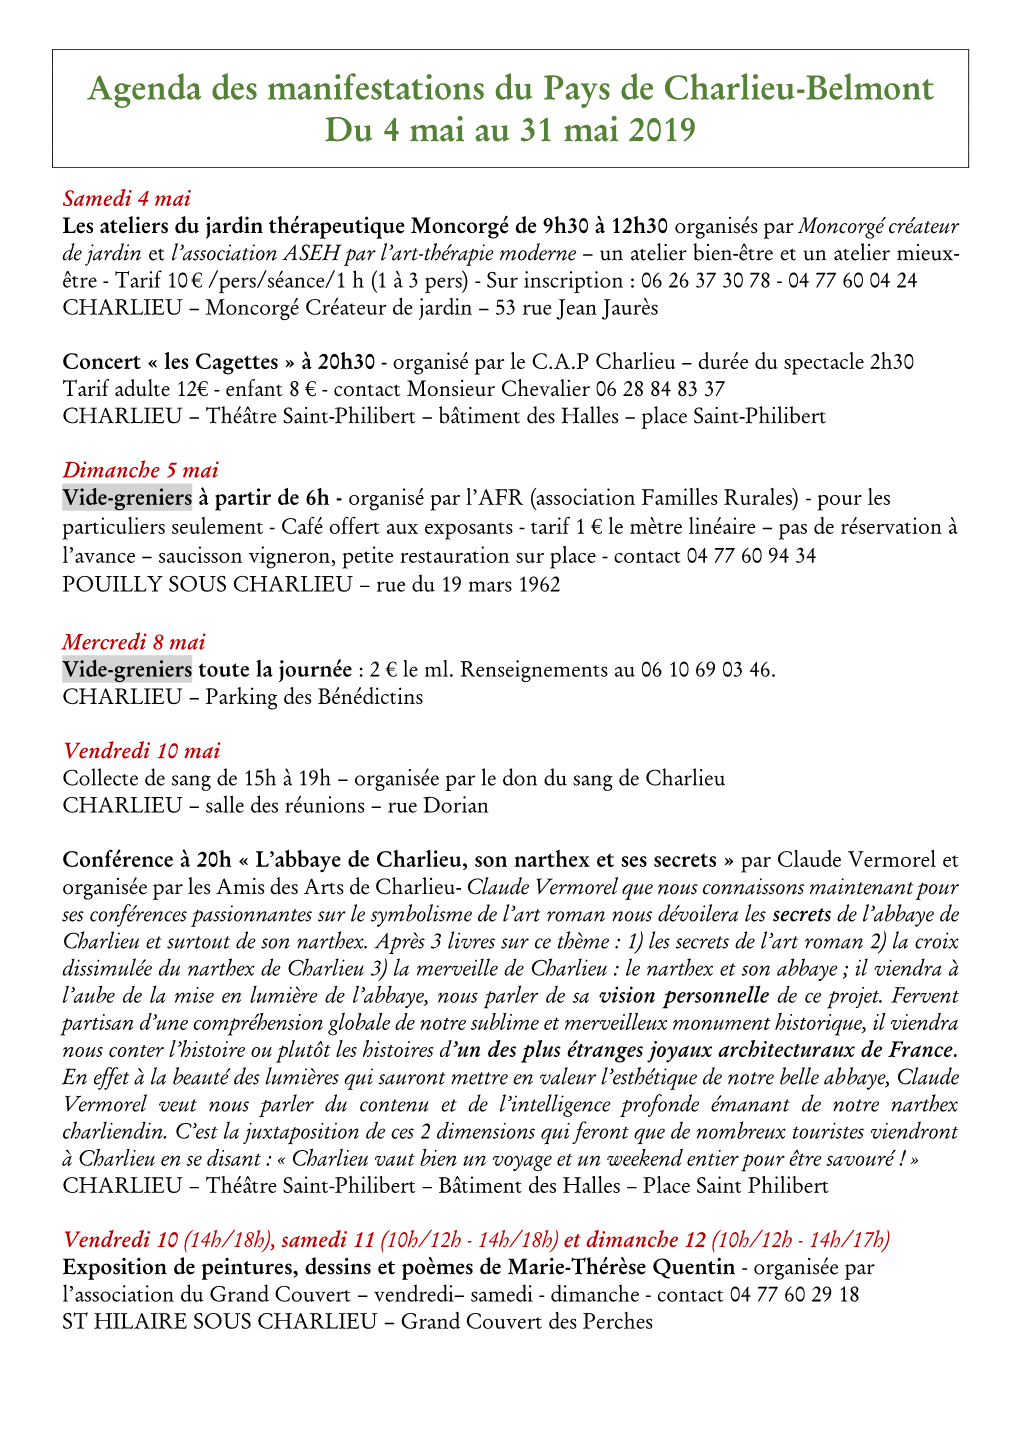 Agenda Des Manifestations Du Pays De Charlieu-Belmont Du 4 Mai Au 31 Mai 2019